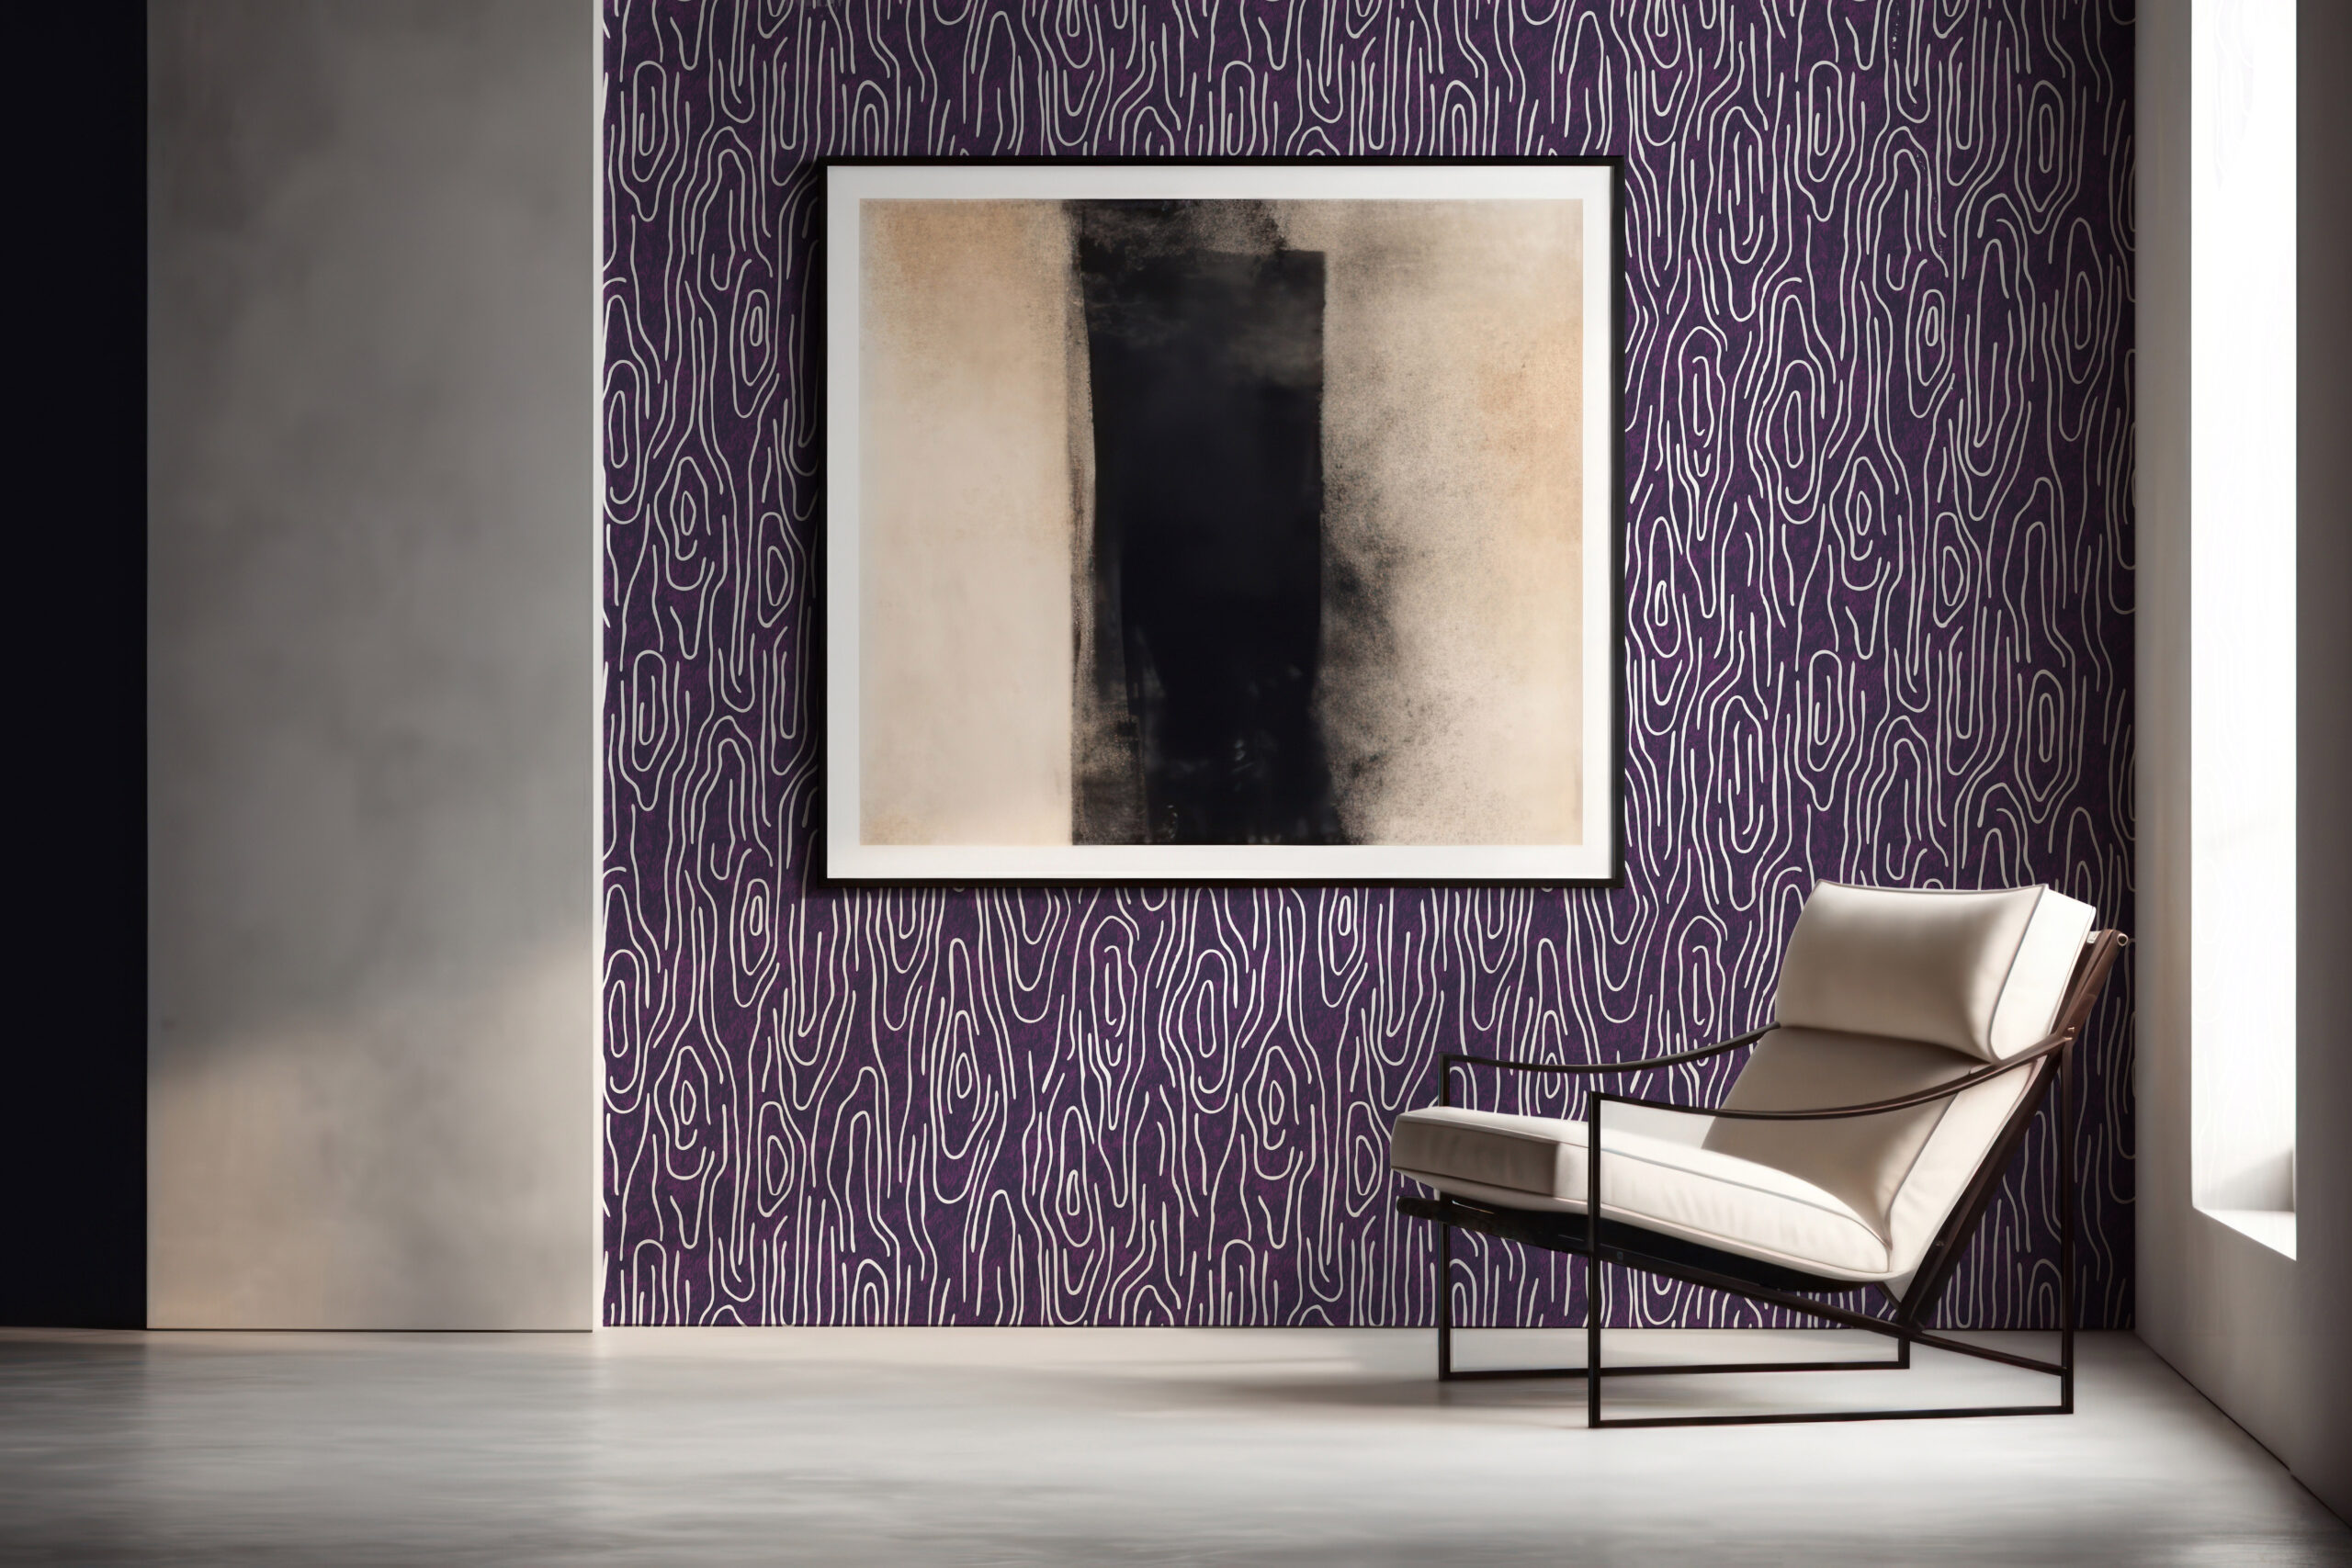 Vampa-Magnetica-MaVoix-wallpaper-by-Studio-Lievito-pattern-Collezione-Essenziali-Chill-Living.jpg